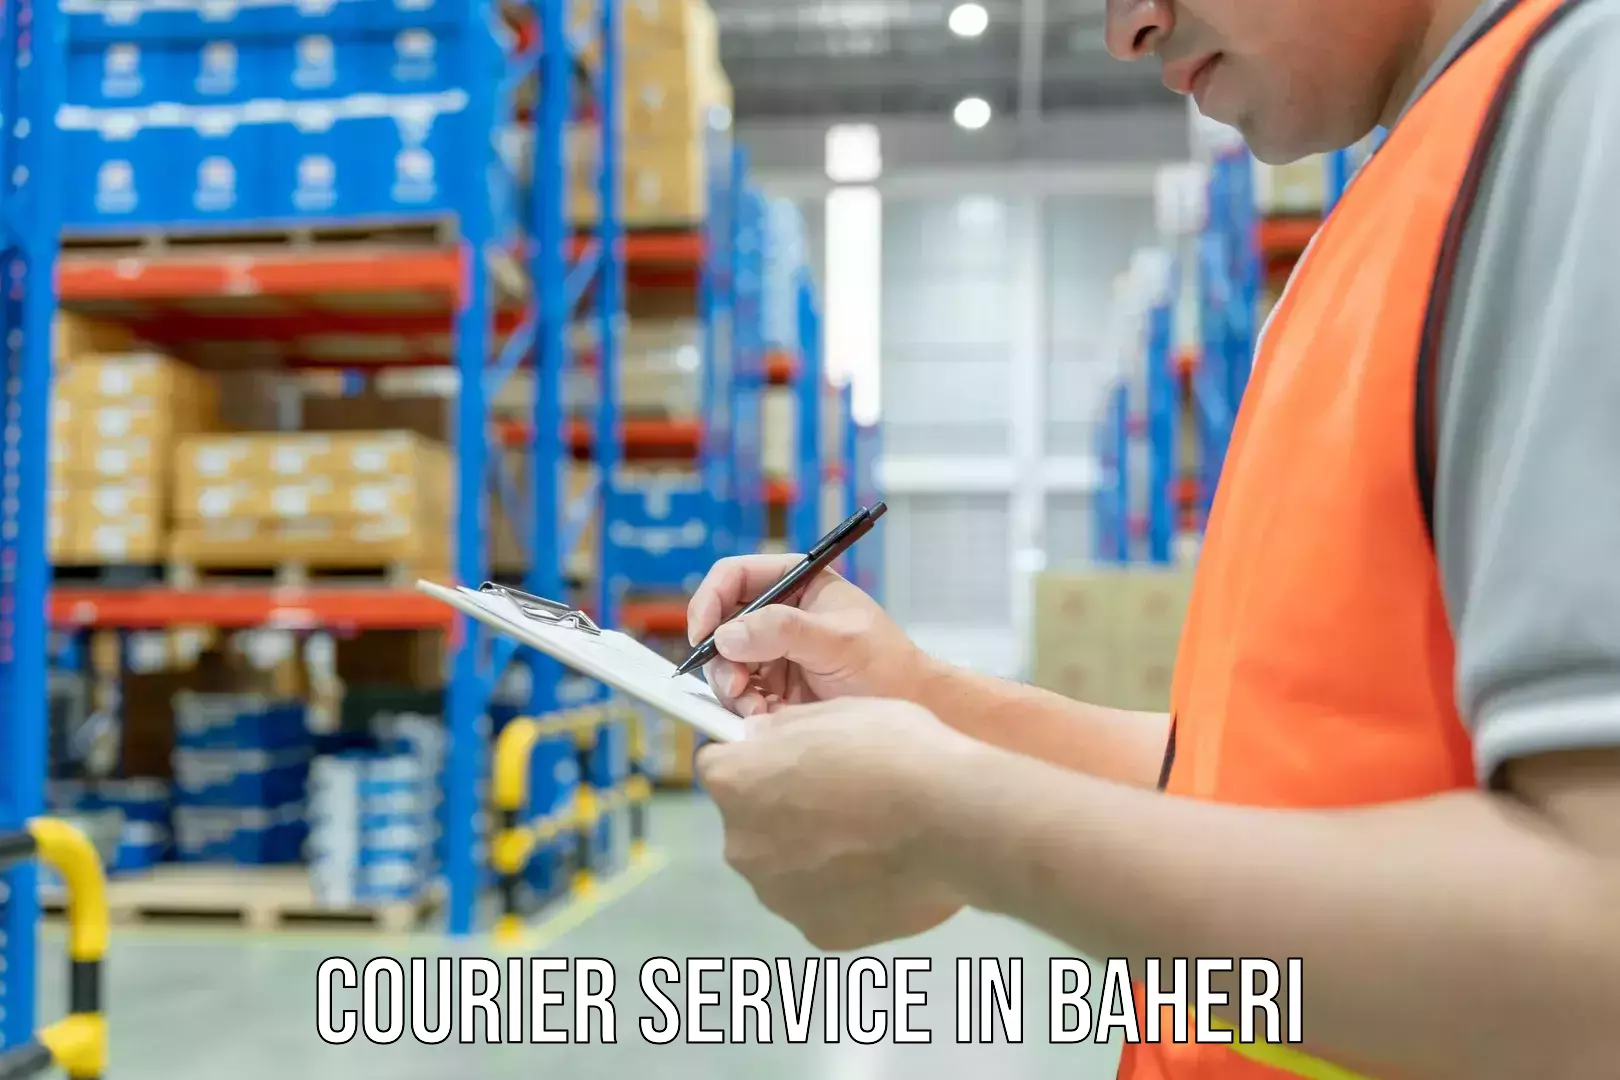 Affordable parcel rates in Baheri